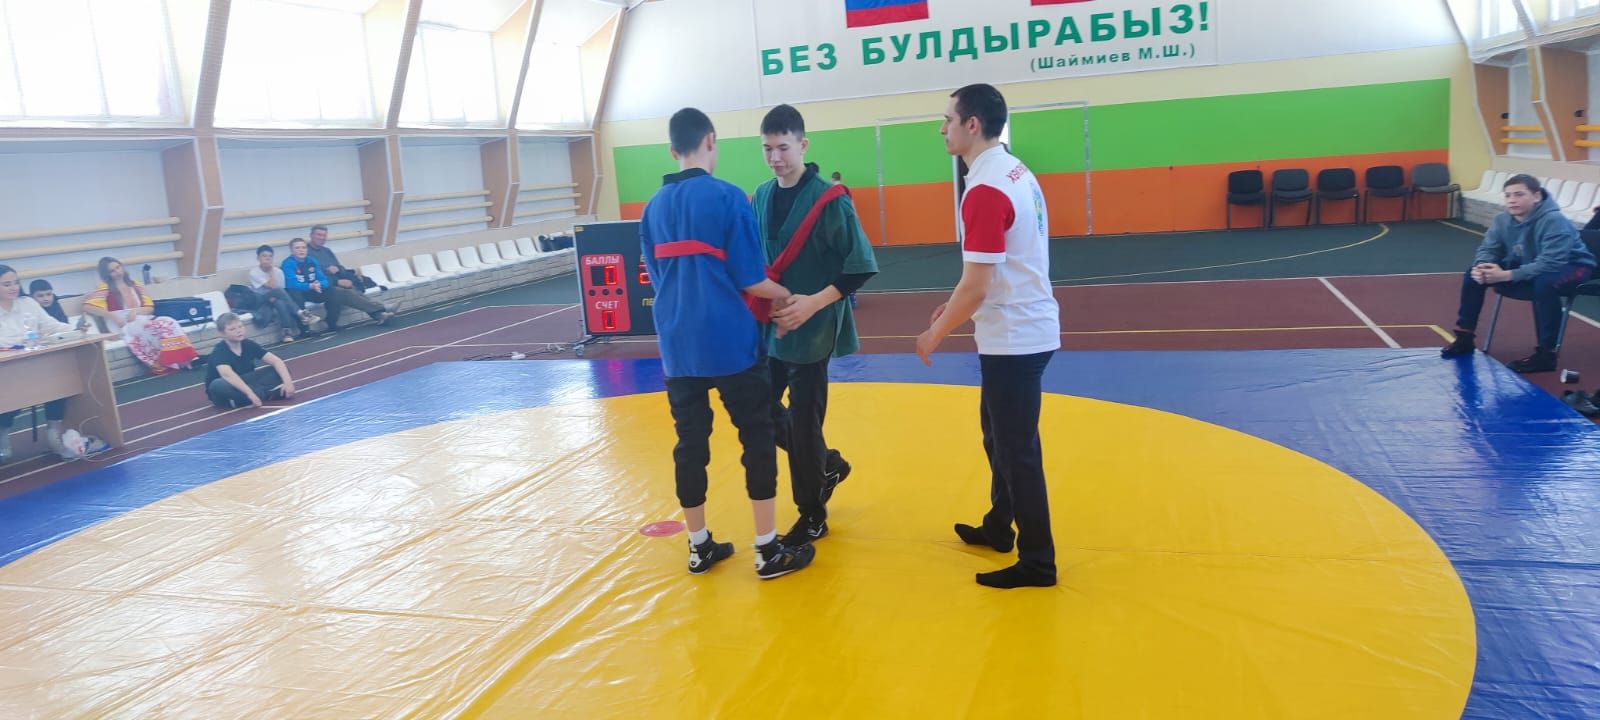 Нурхади Гильфанов и его коллеги вновь собрали любителей борьбы